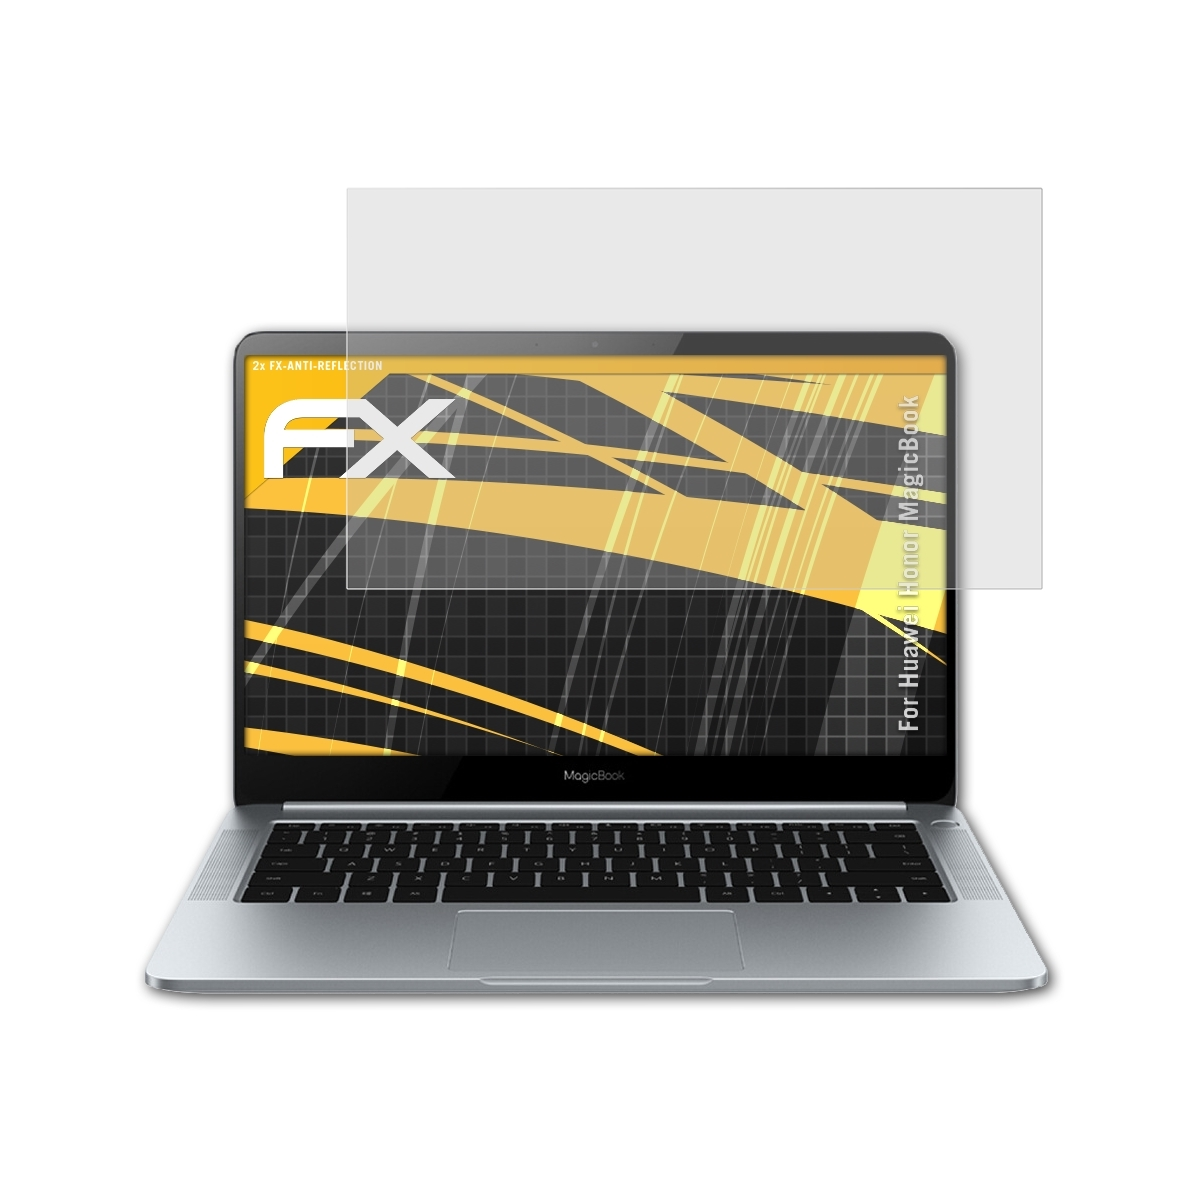 FX-Antireflex ATFOLIX Displayschutz(für 2x Huawei MagicBook) Honor